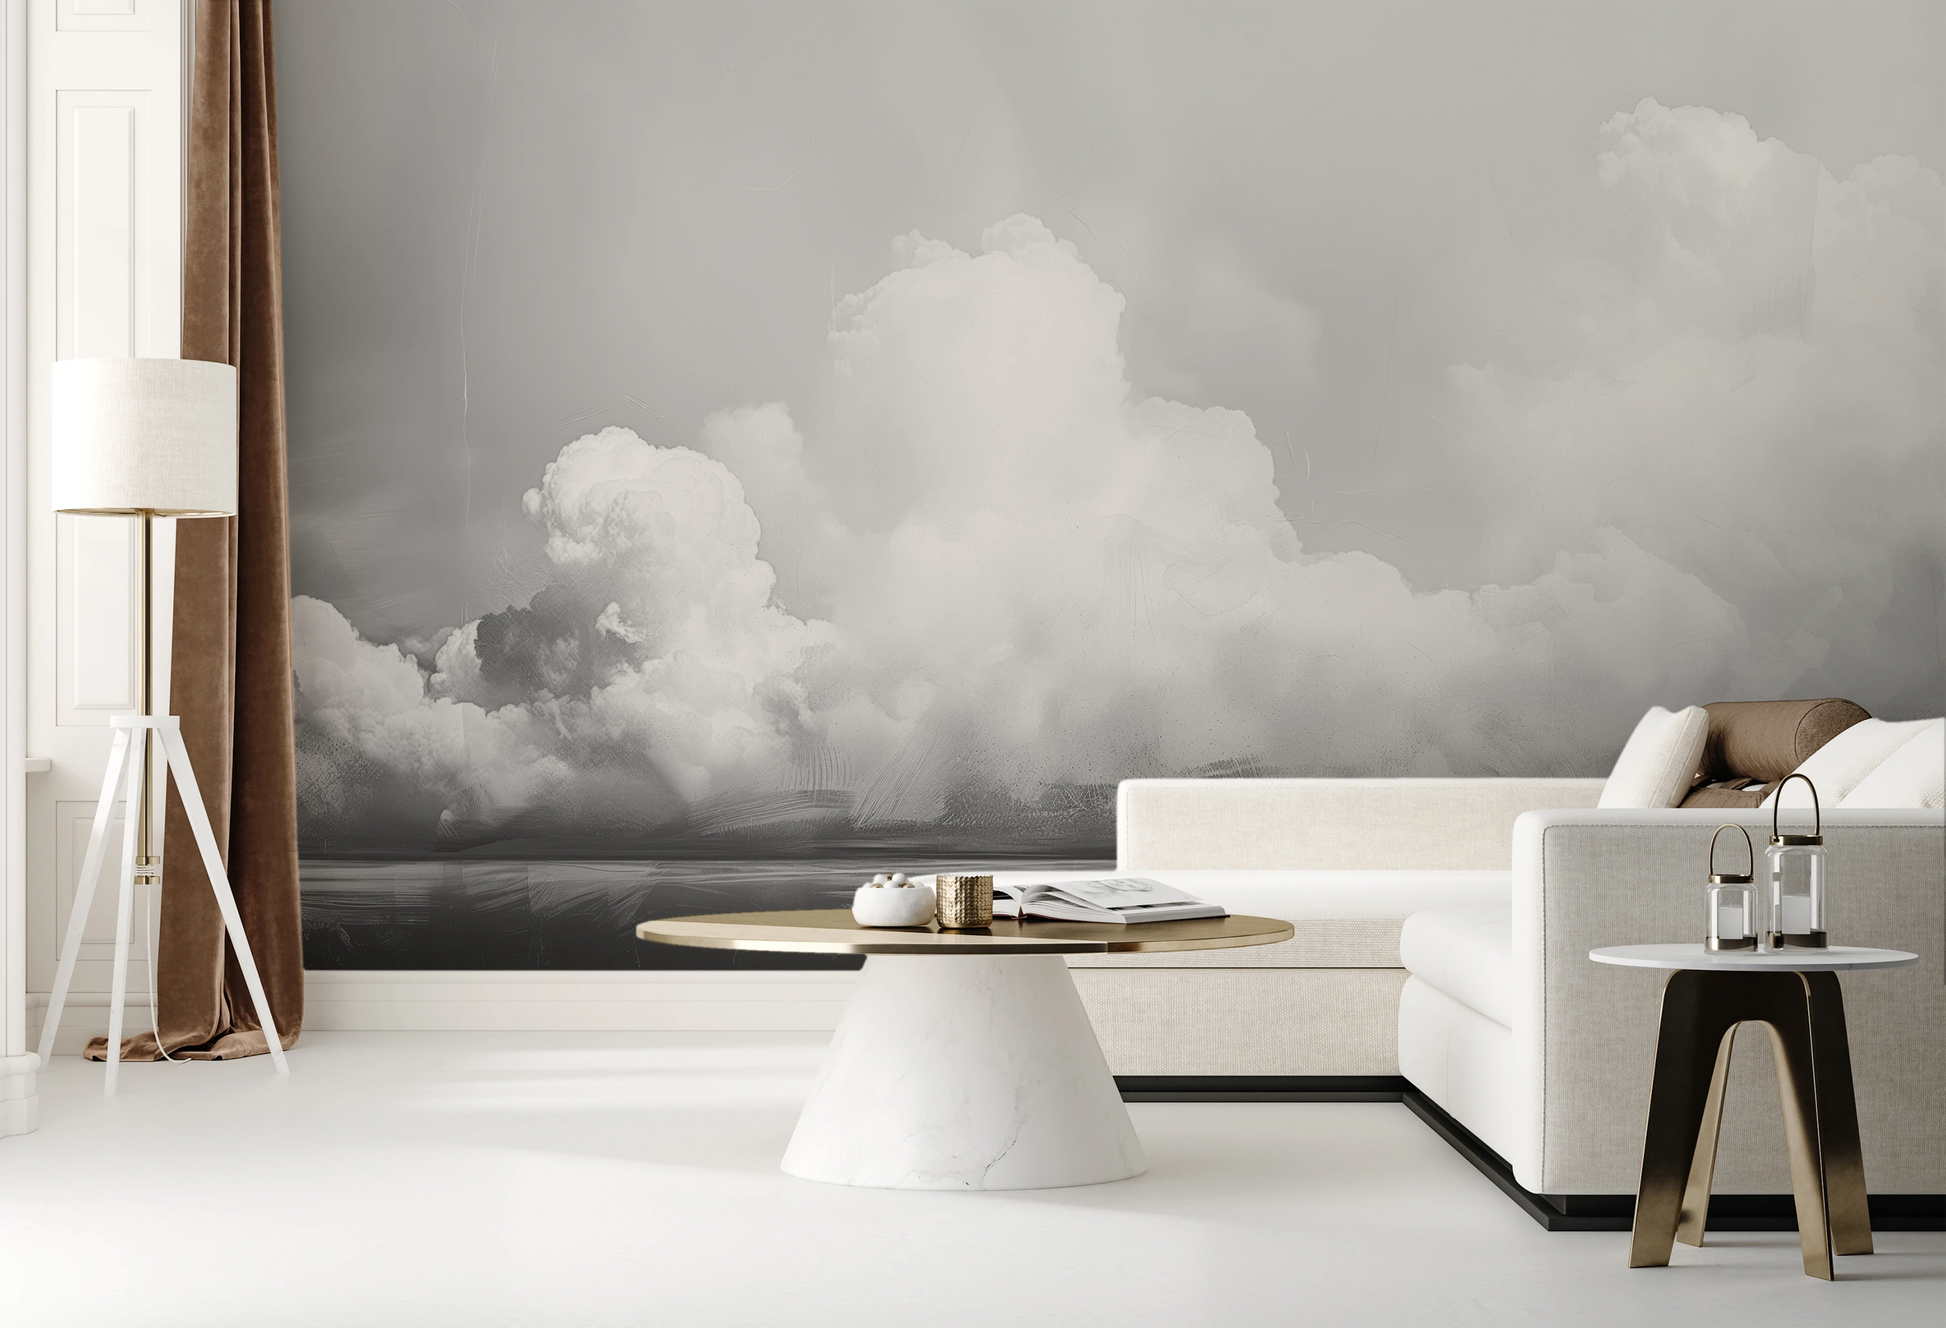 Wzór fototapety artystycznej o nazwie Clouds of Tranquility pokazanej w aranżacji wnętrza.